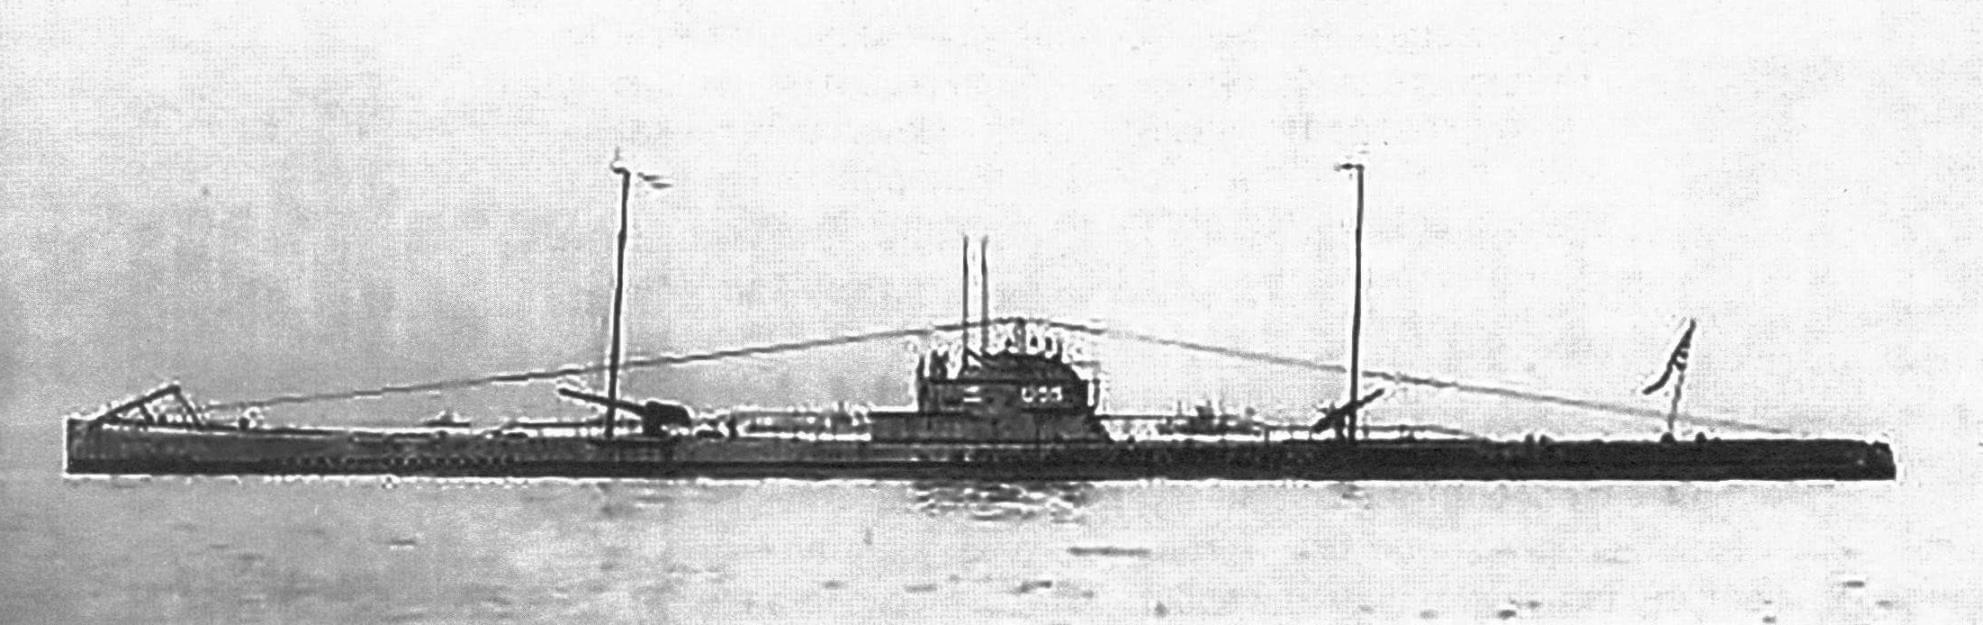 Германская подводная лодка U-55 (фотография сделана вскоре после окончания Первой мировой войны)